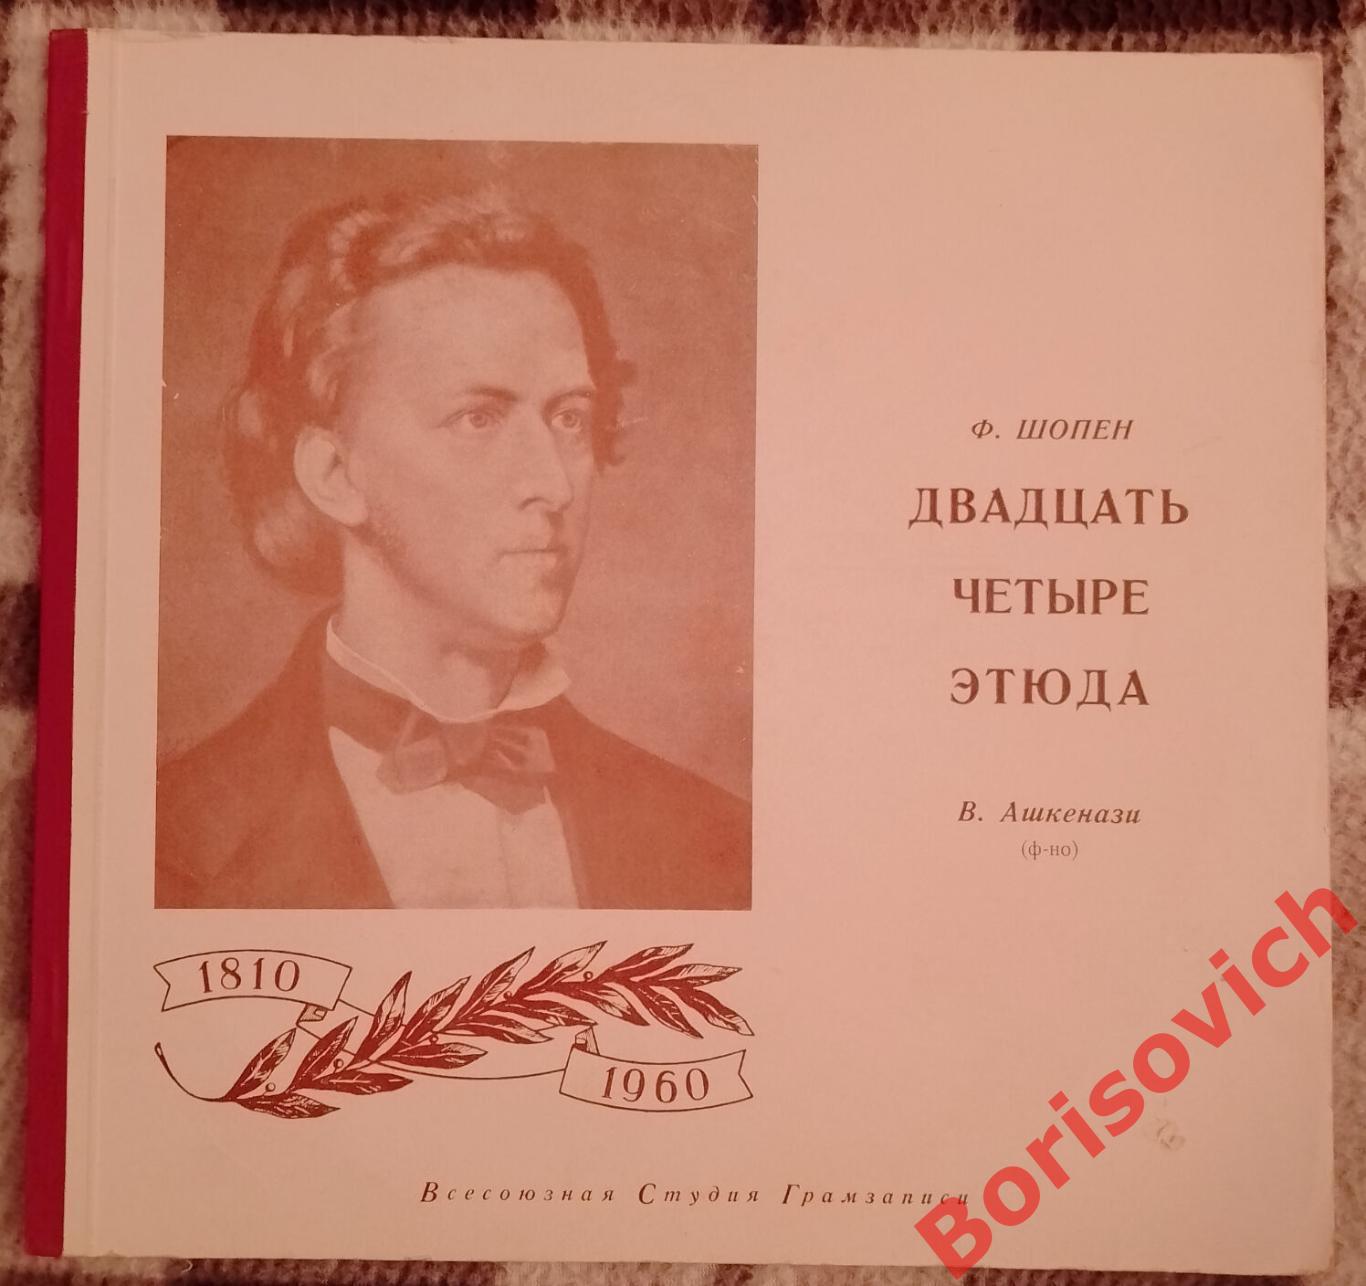 Ф. Шопен Двадцать четыре этюда В. Ашкенази фортепиано 1959 г 2 пластинки